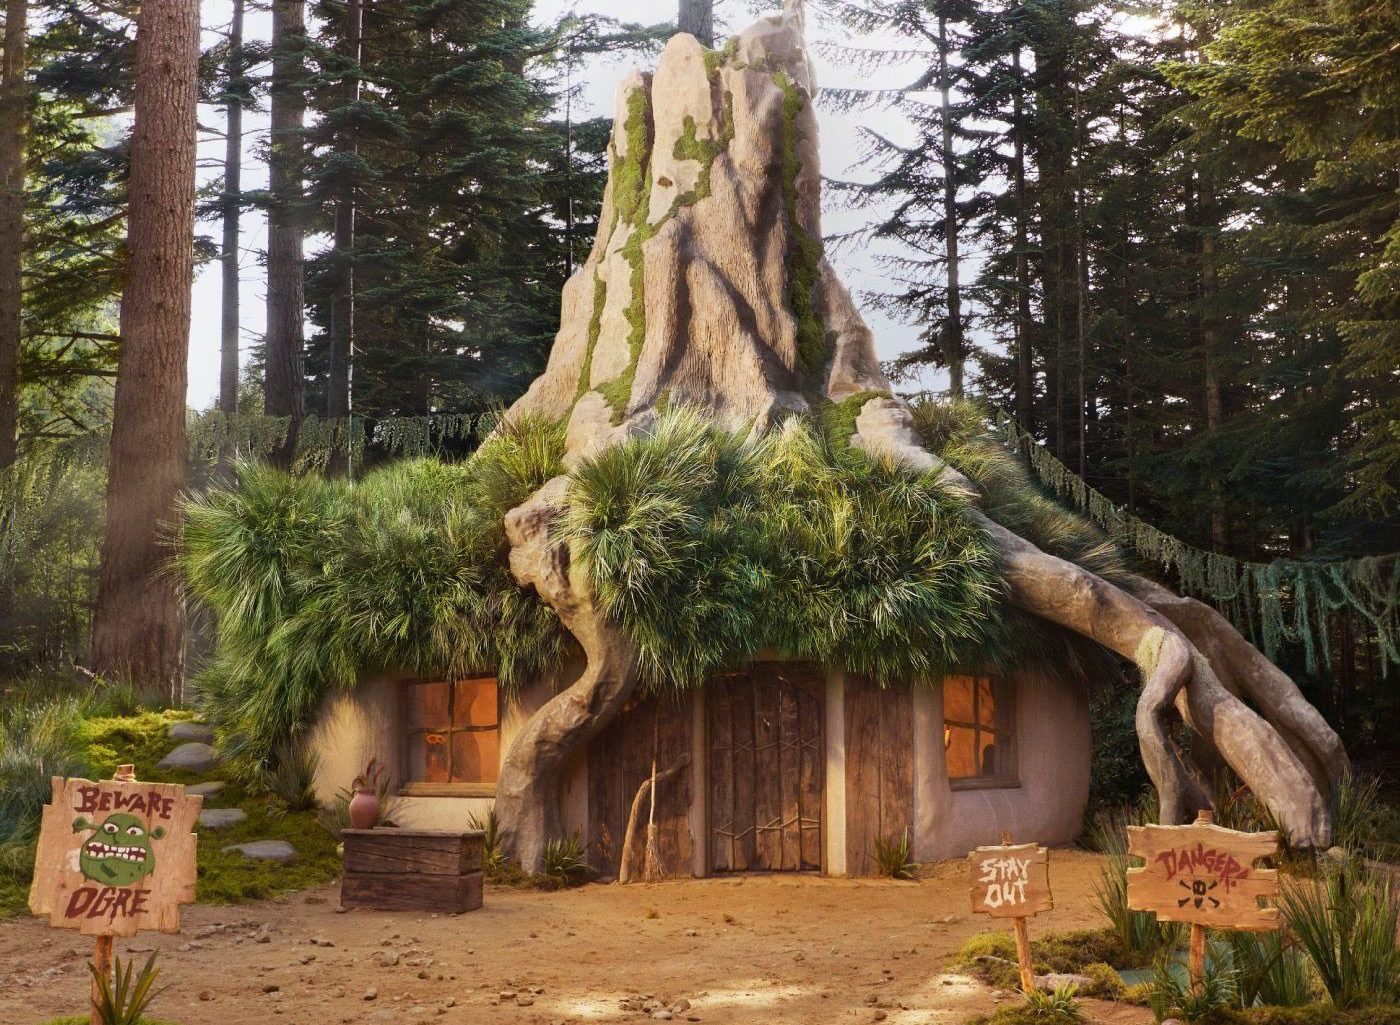 ¿Listo para aventurarte? El Pantano de Shrek llega a Airbnb